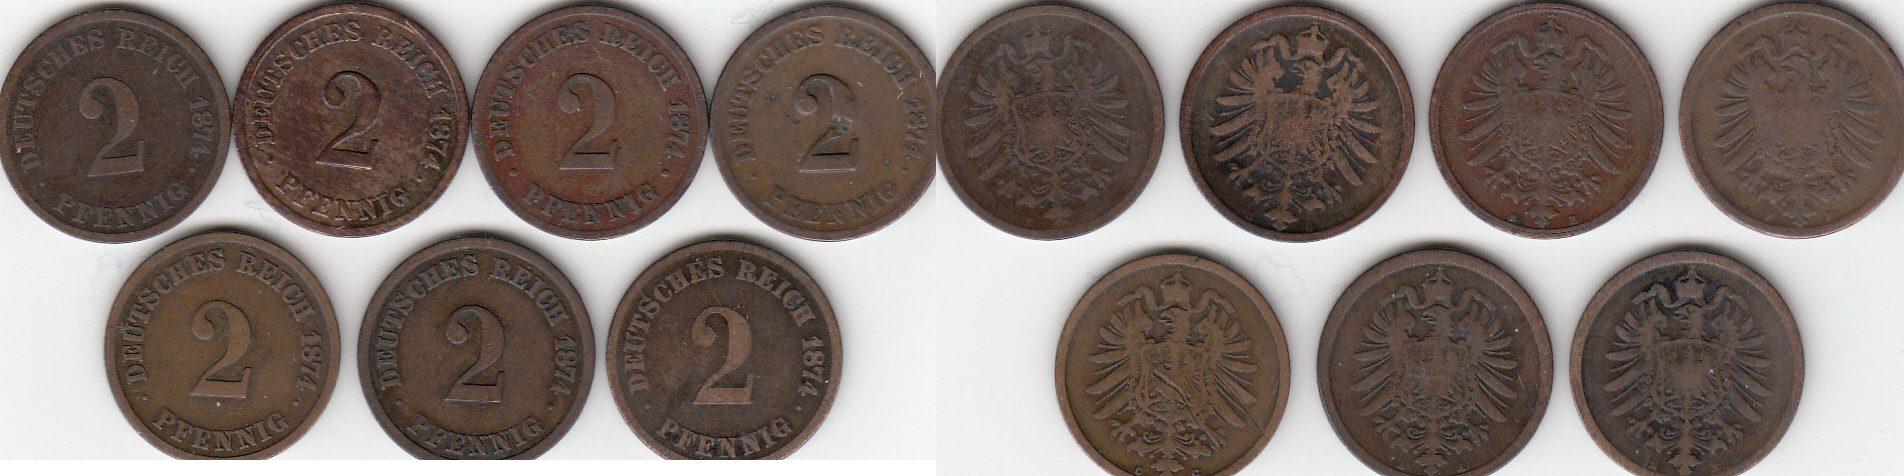 Foto Deutsches Kaiserreich 2 Pfennig: Lot aus 7 Münzen 1874